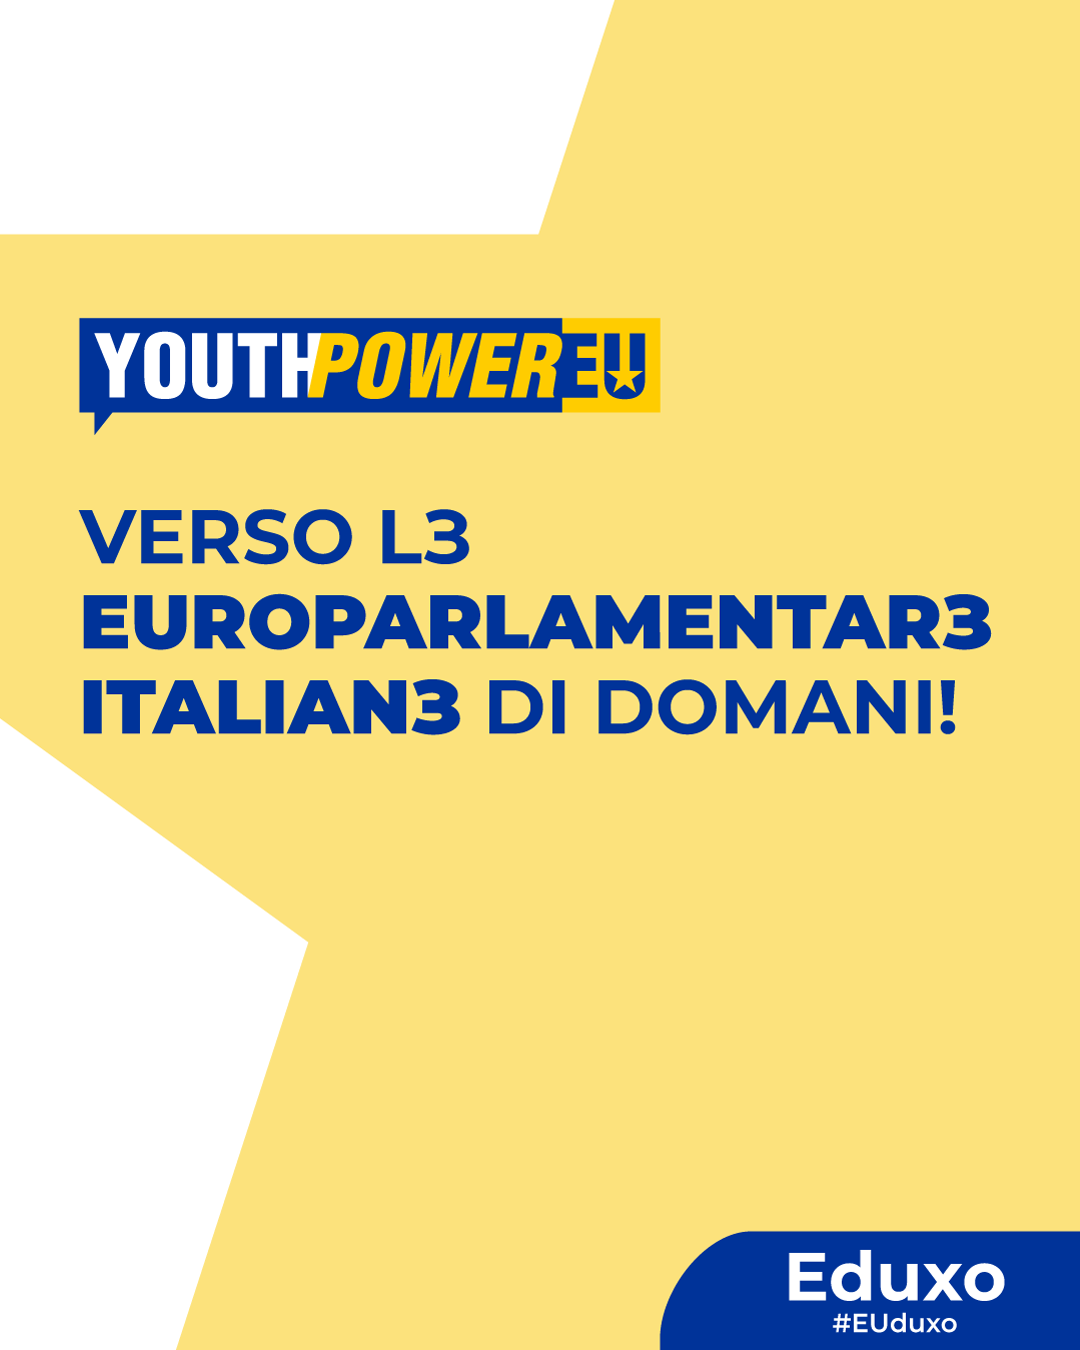 Youth Power EU